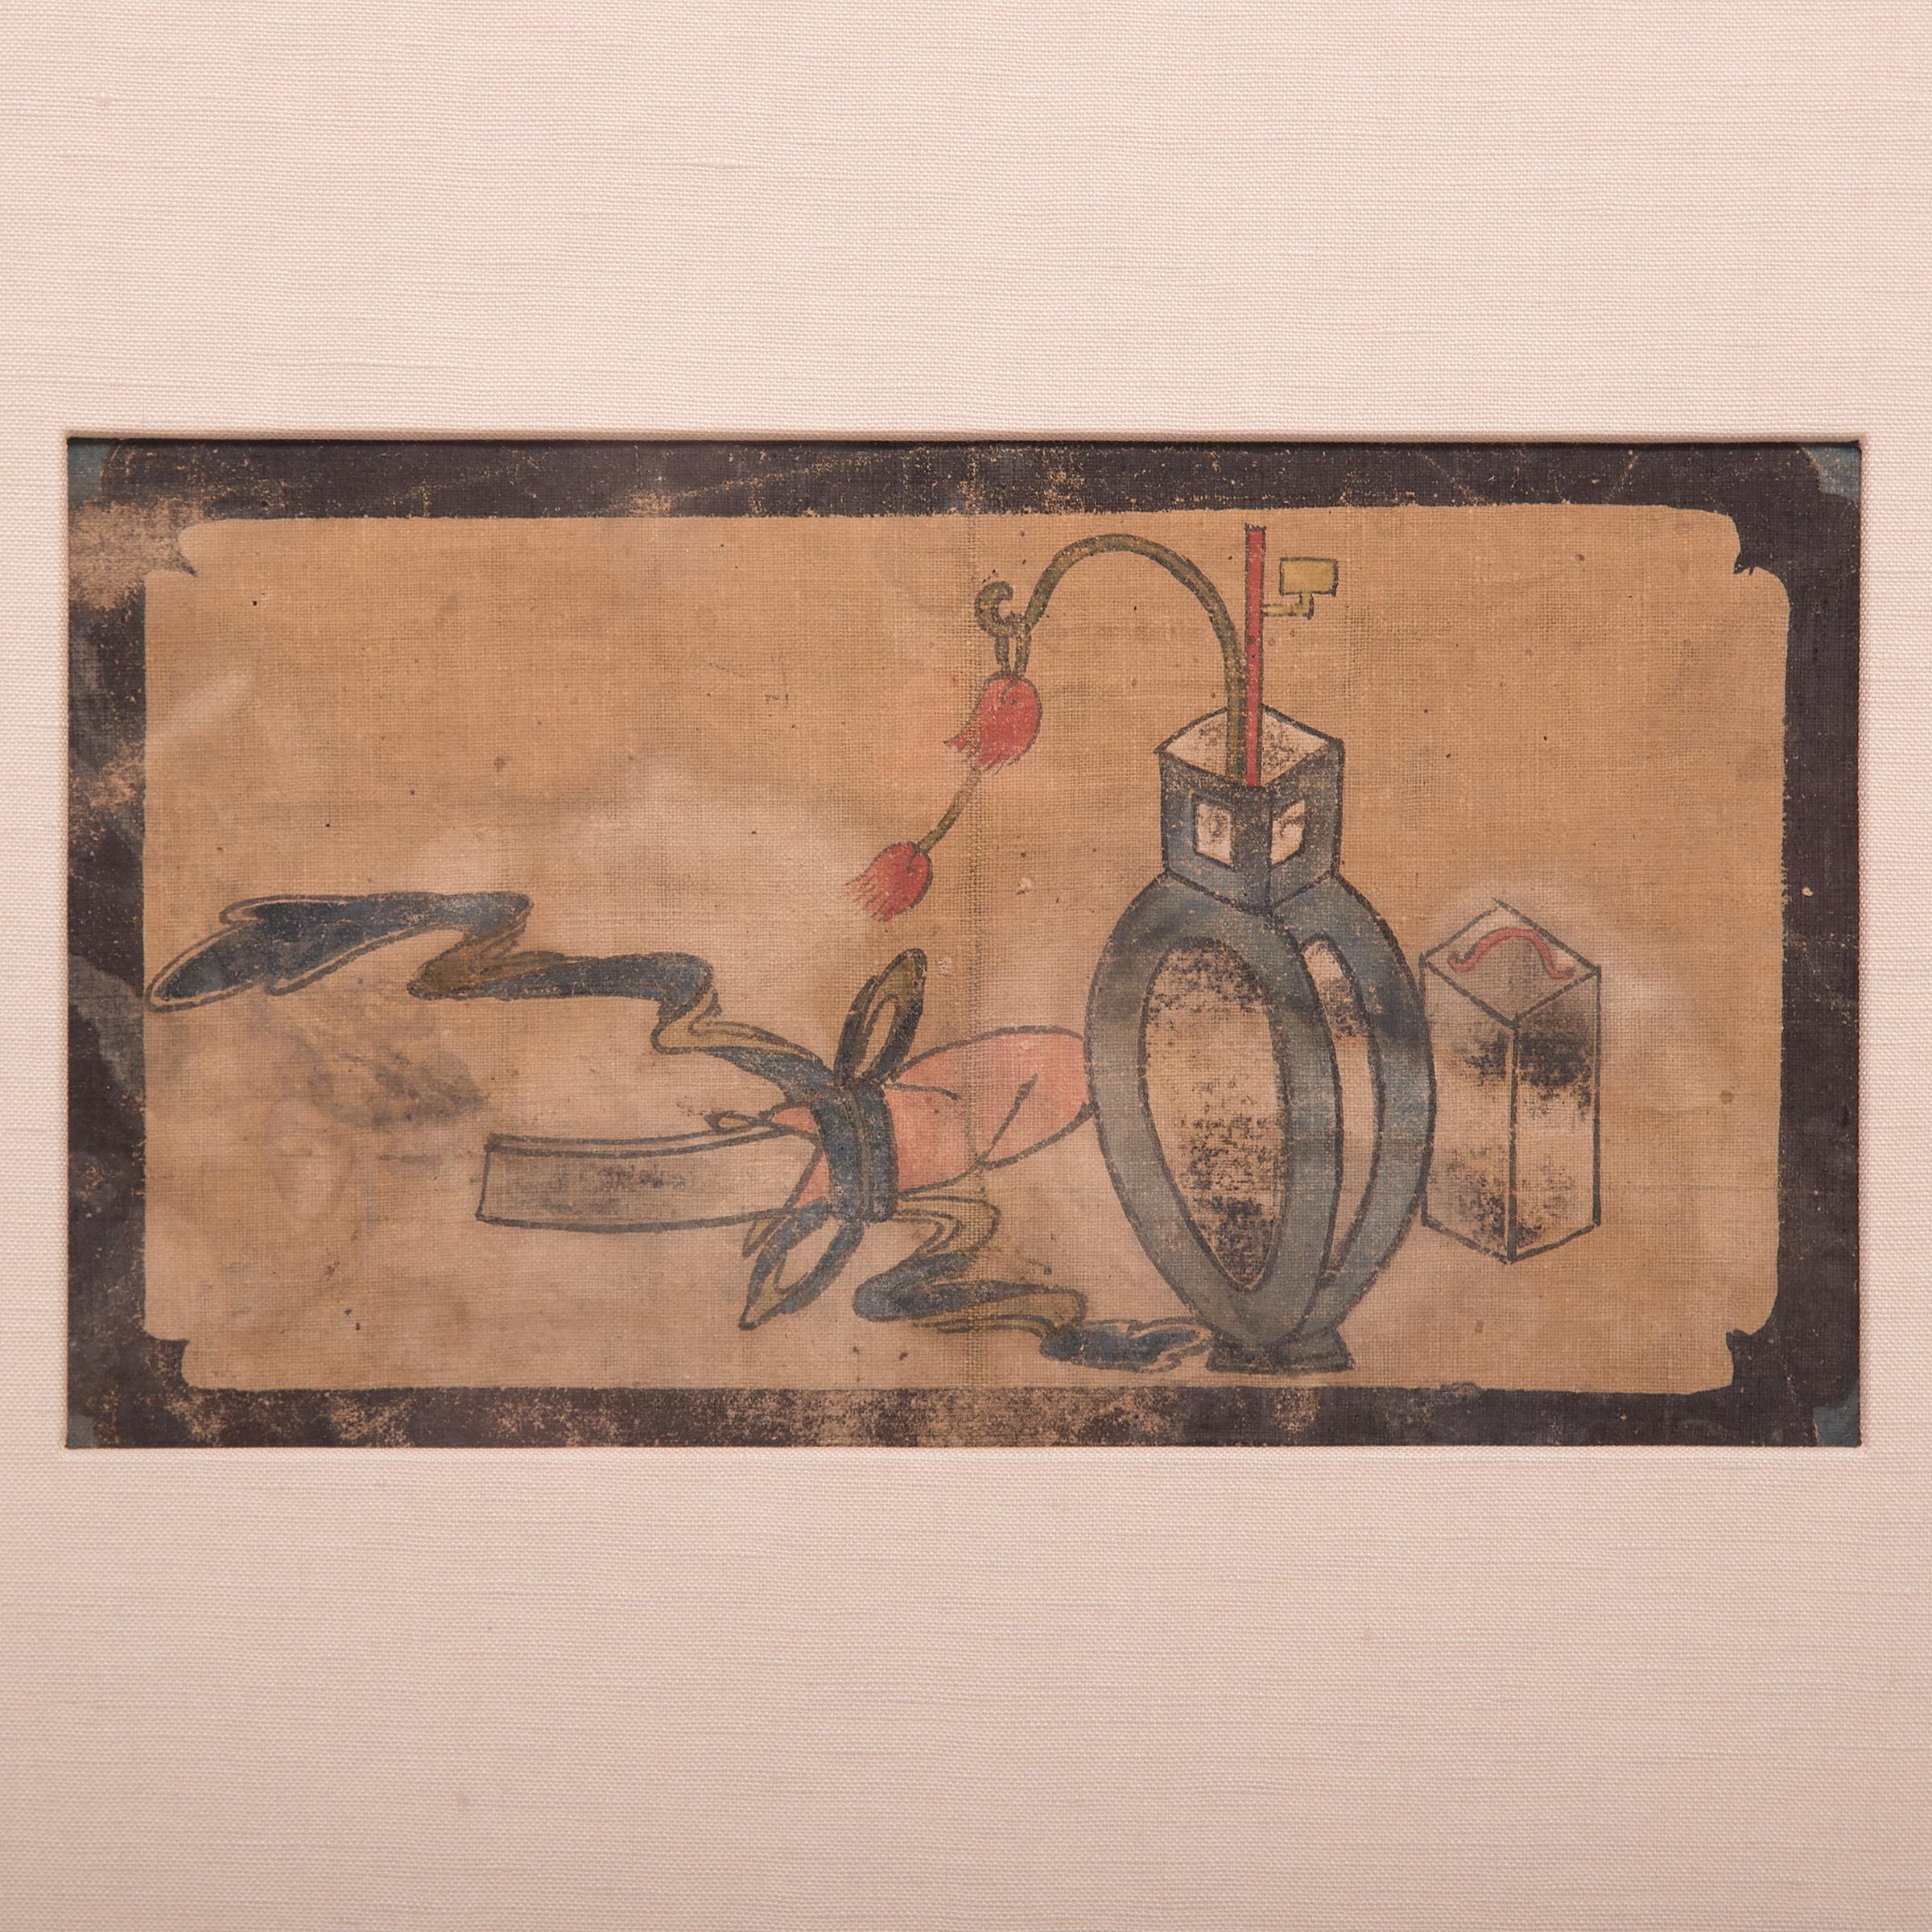 Eine Schriftrolle und eine kleine Laterne, die auf diesem Gemälde aus dem 19. Jahrhundert abgebildet sind, suggerieren die romantische Vorstellung eines chinesischen Gelehrten, der in den Abendstunden malt. Dieses bemerkenswert lebendige Gemälde war